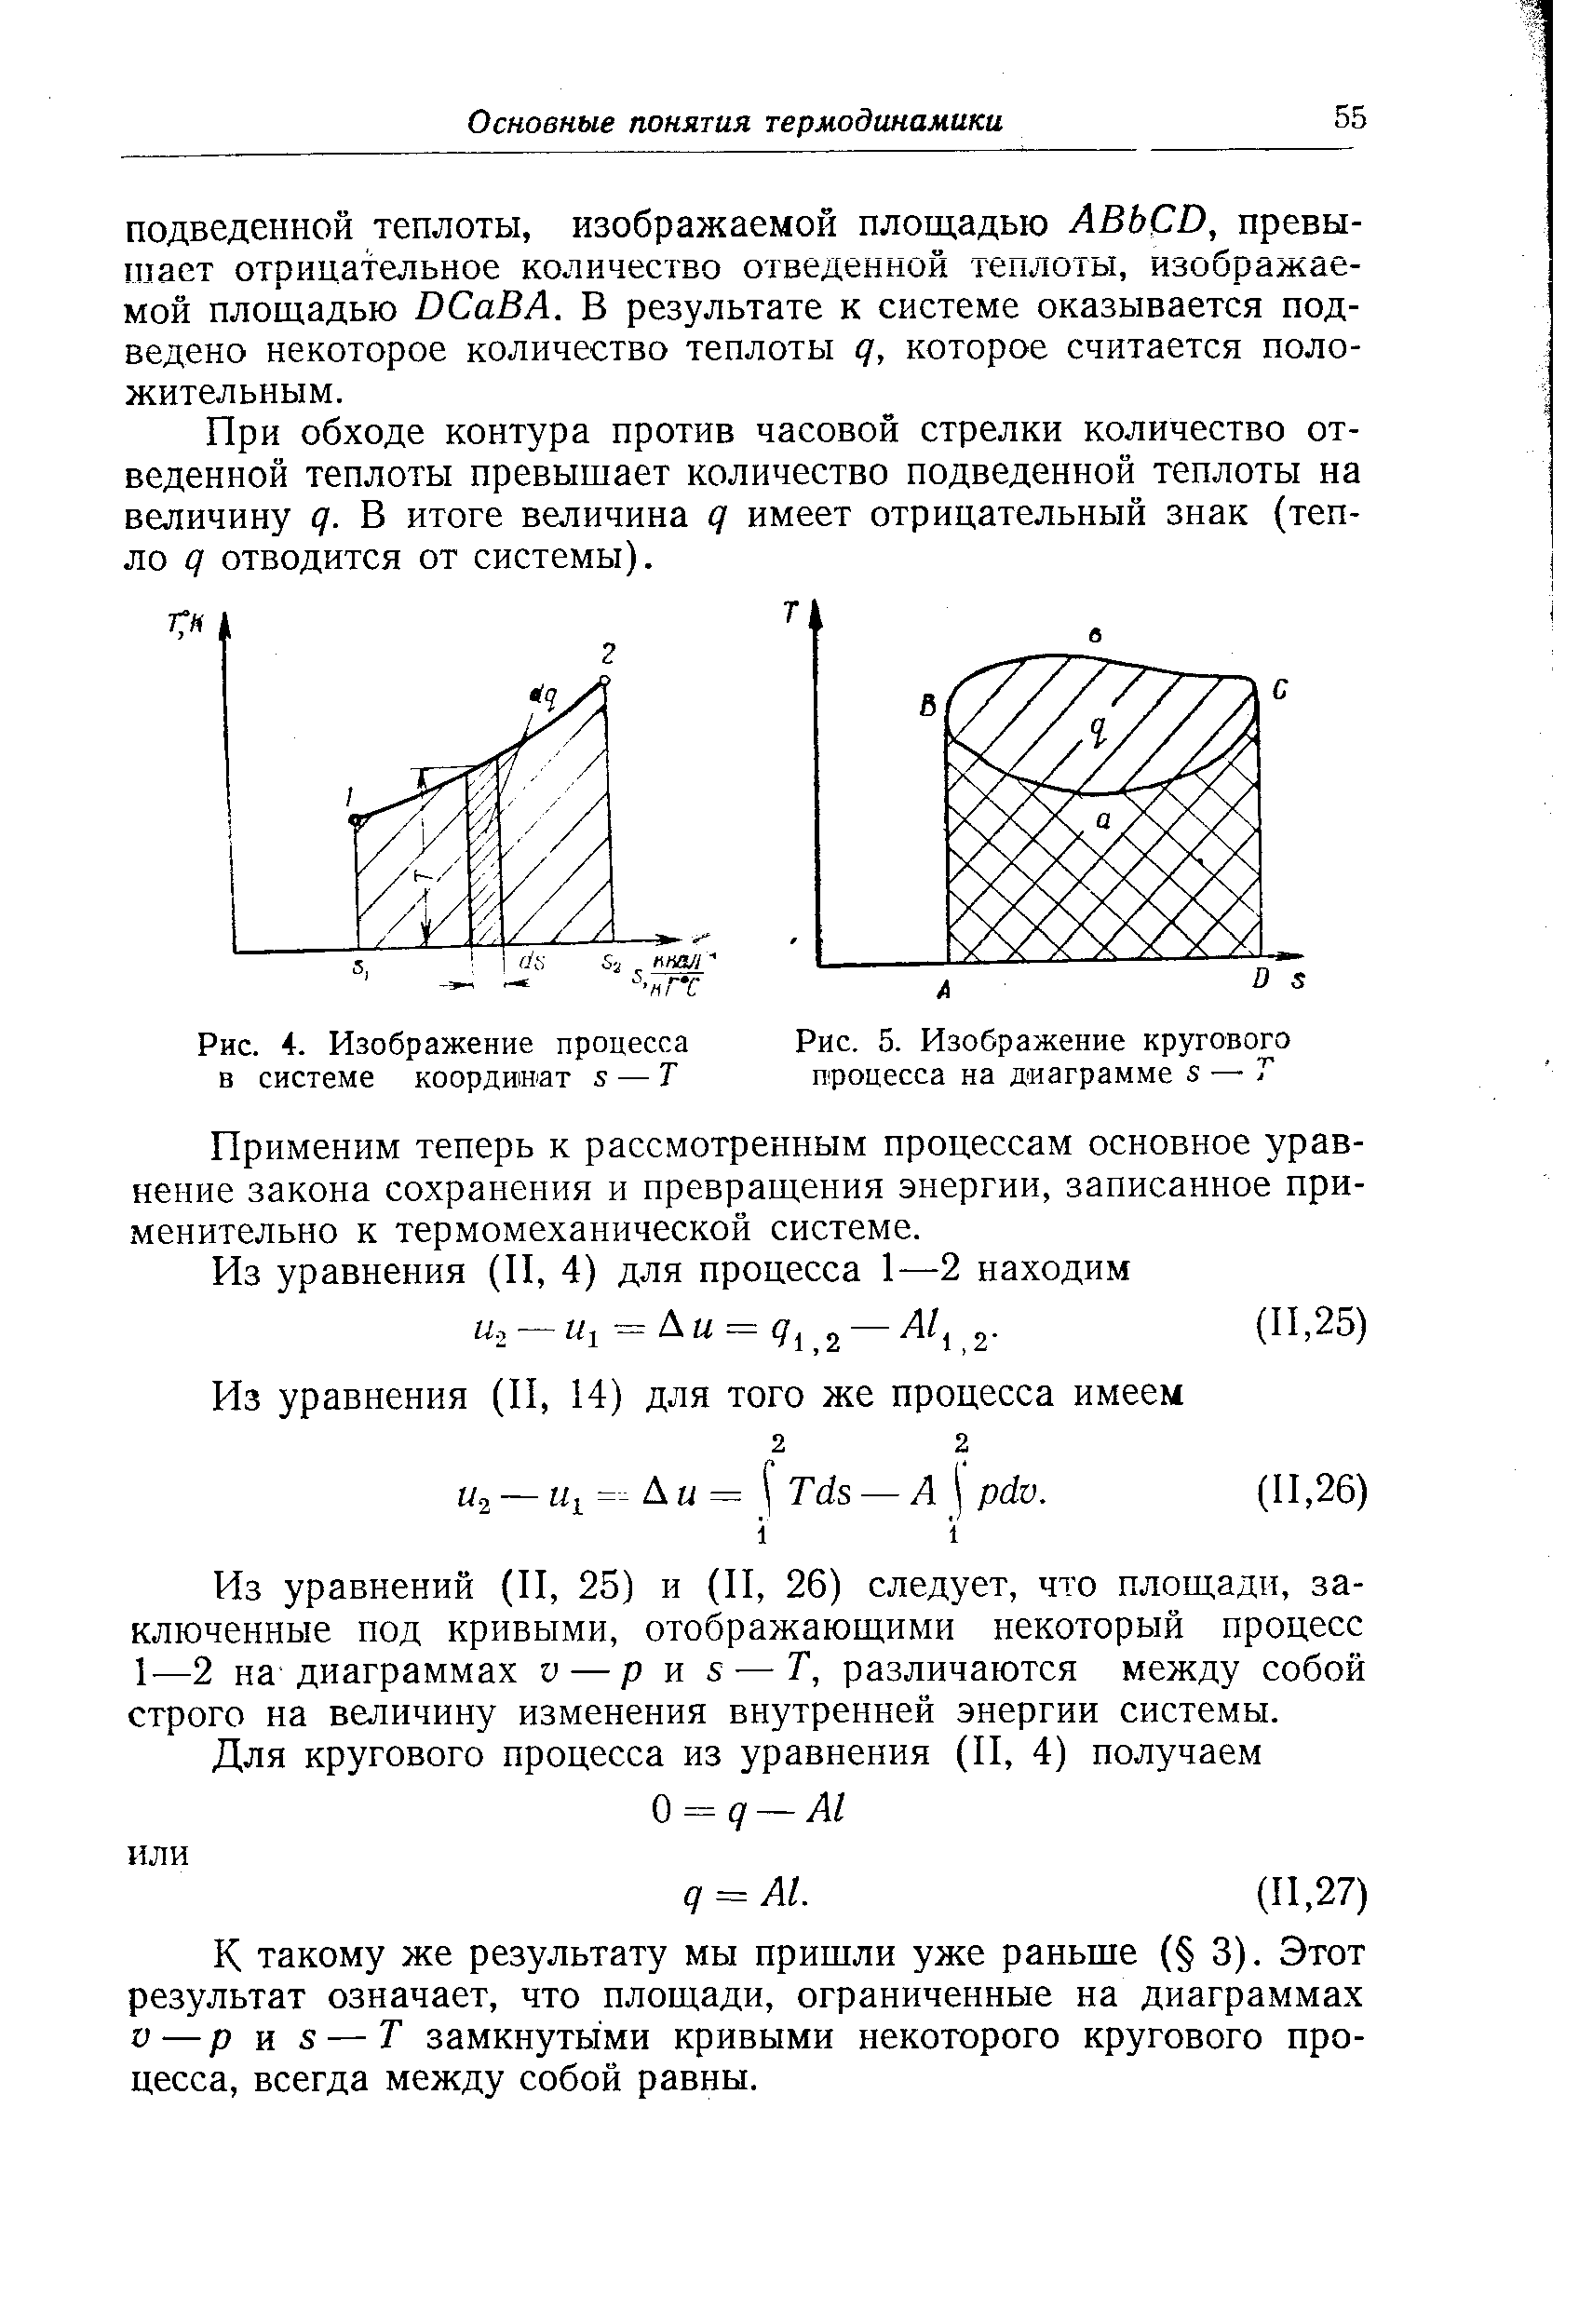 Рис. 4. Изображение процесса в системе координат 5 — Т
